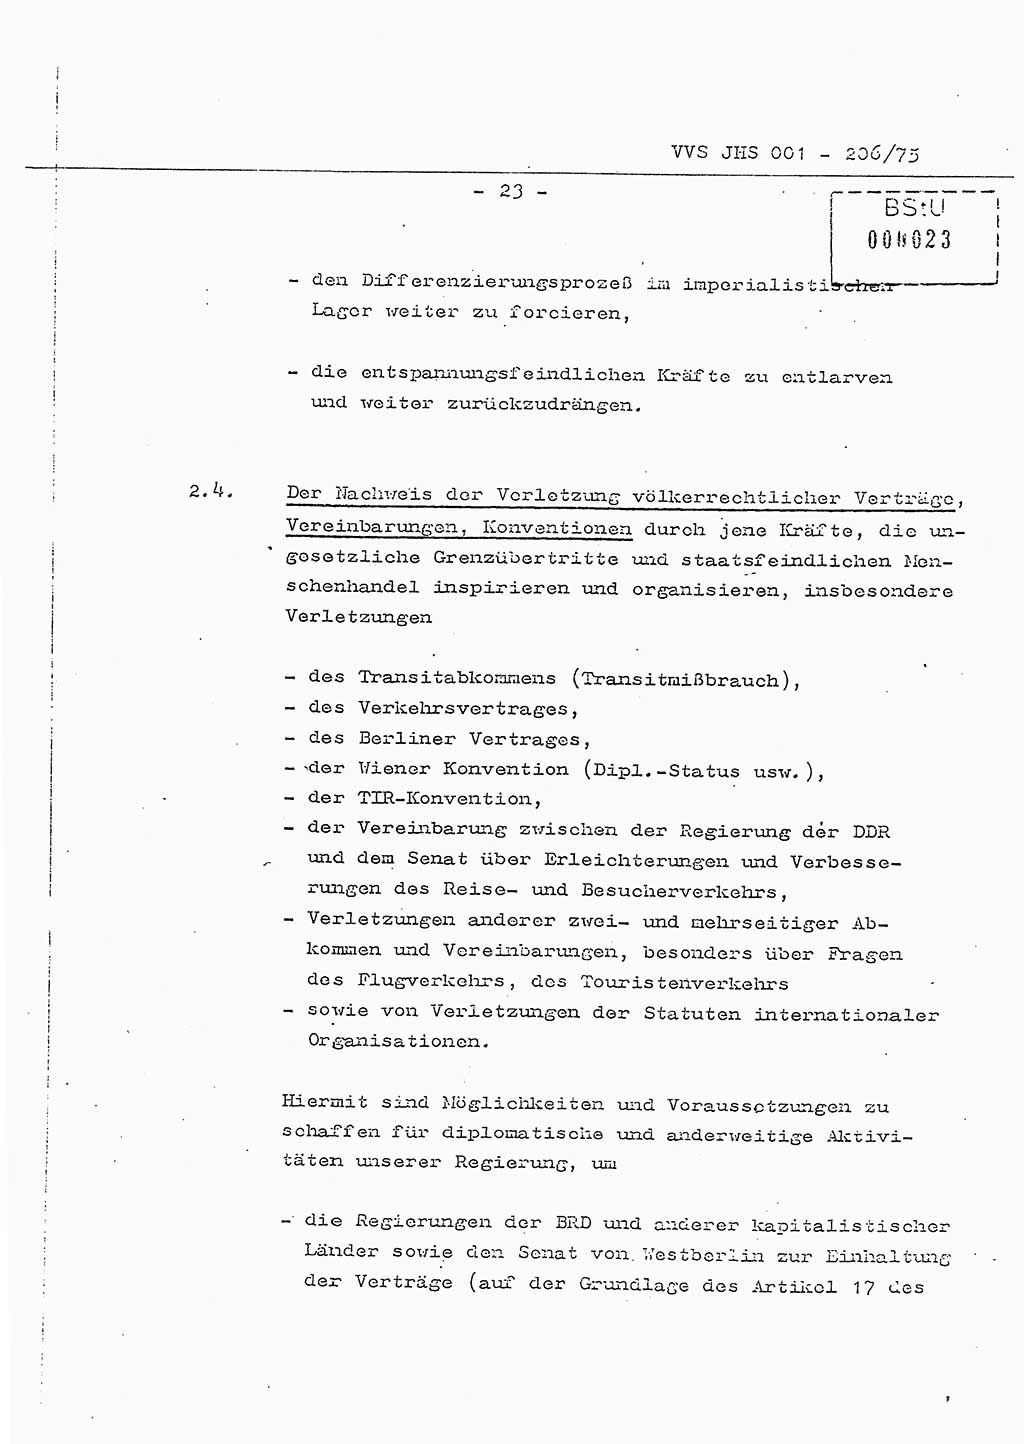 Dissertation Generalmajor Manfred Hummitzsch (Leiter der BV Leipzig), Generalmajor Heinz Fiedler (HA Ⅵ), Oberst Rolf Fister (HA Ⅸ), Ministerium für Staatssicherheit (MfS) [Deutsche Demokratische Republik (DDR)], Juristische Hochschule (JHS), Vertrauliche Verschlußsache (VVS) 001-206/75, Potsdam 1975, Seite 23 (Diss. MfS DDR JHS VVS 001-206/75 1975, S. 23)